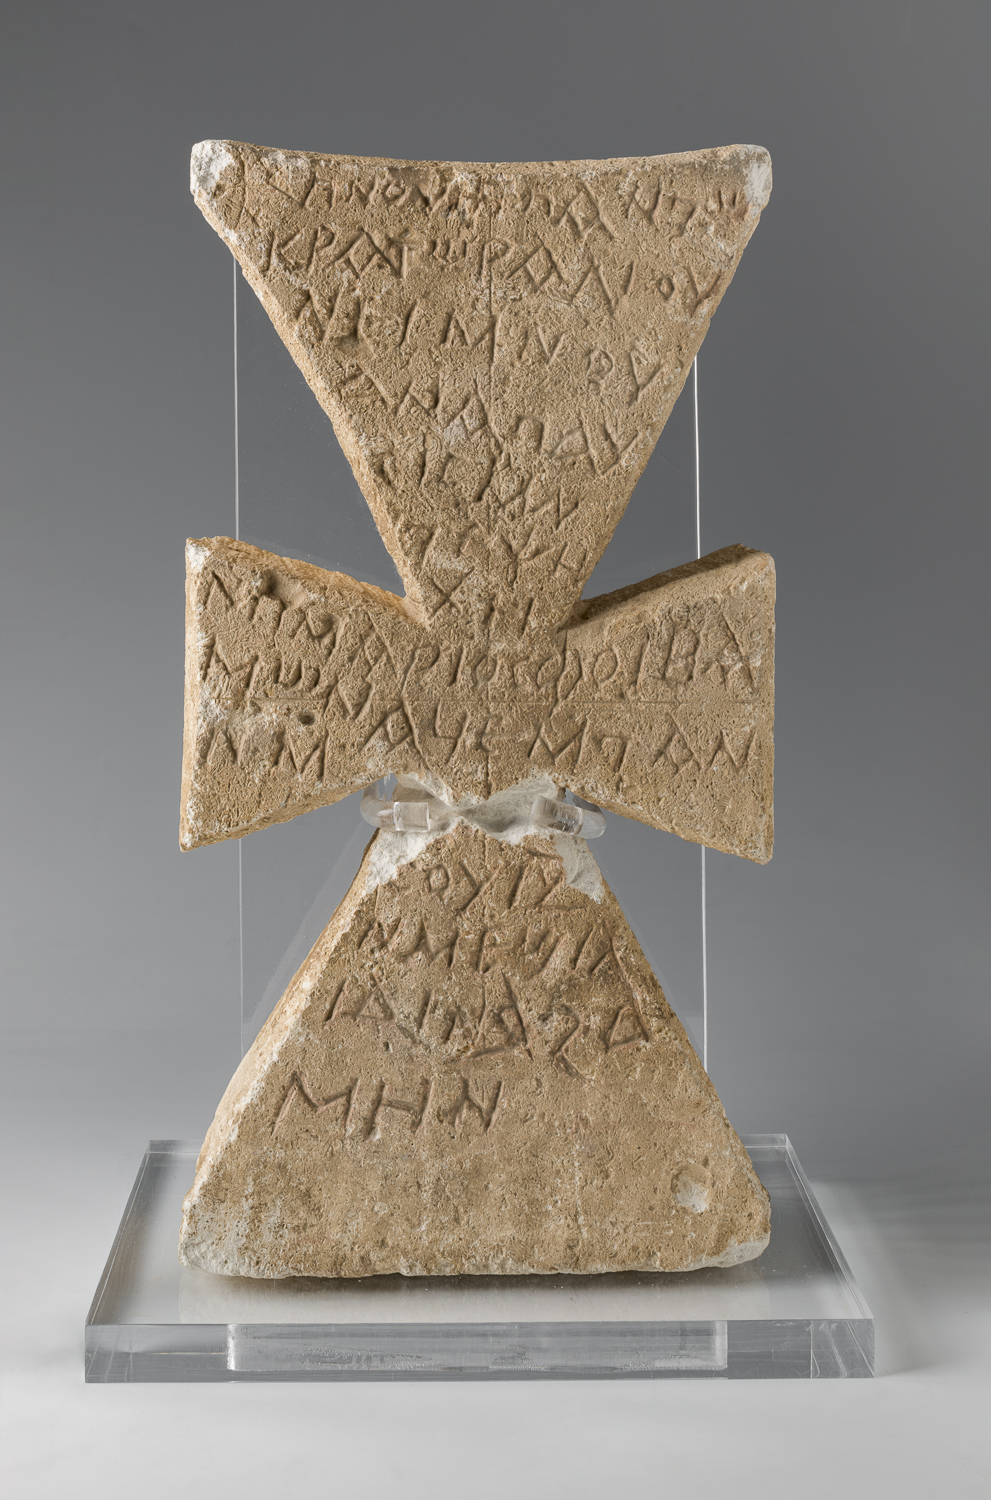 Museo Egizio di Torino Galleria della Scrittura Lapide a forma di croce con iscrizione funeraria copta. Epoca bizantina-epoca islamica (601-900 d.C.)